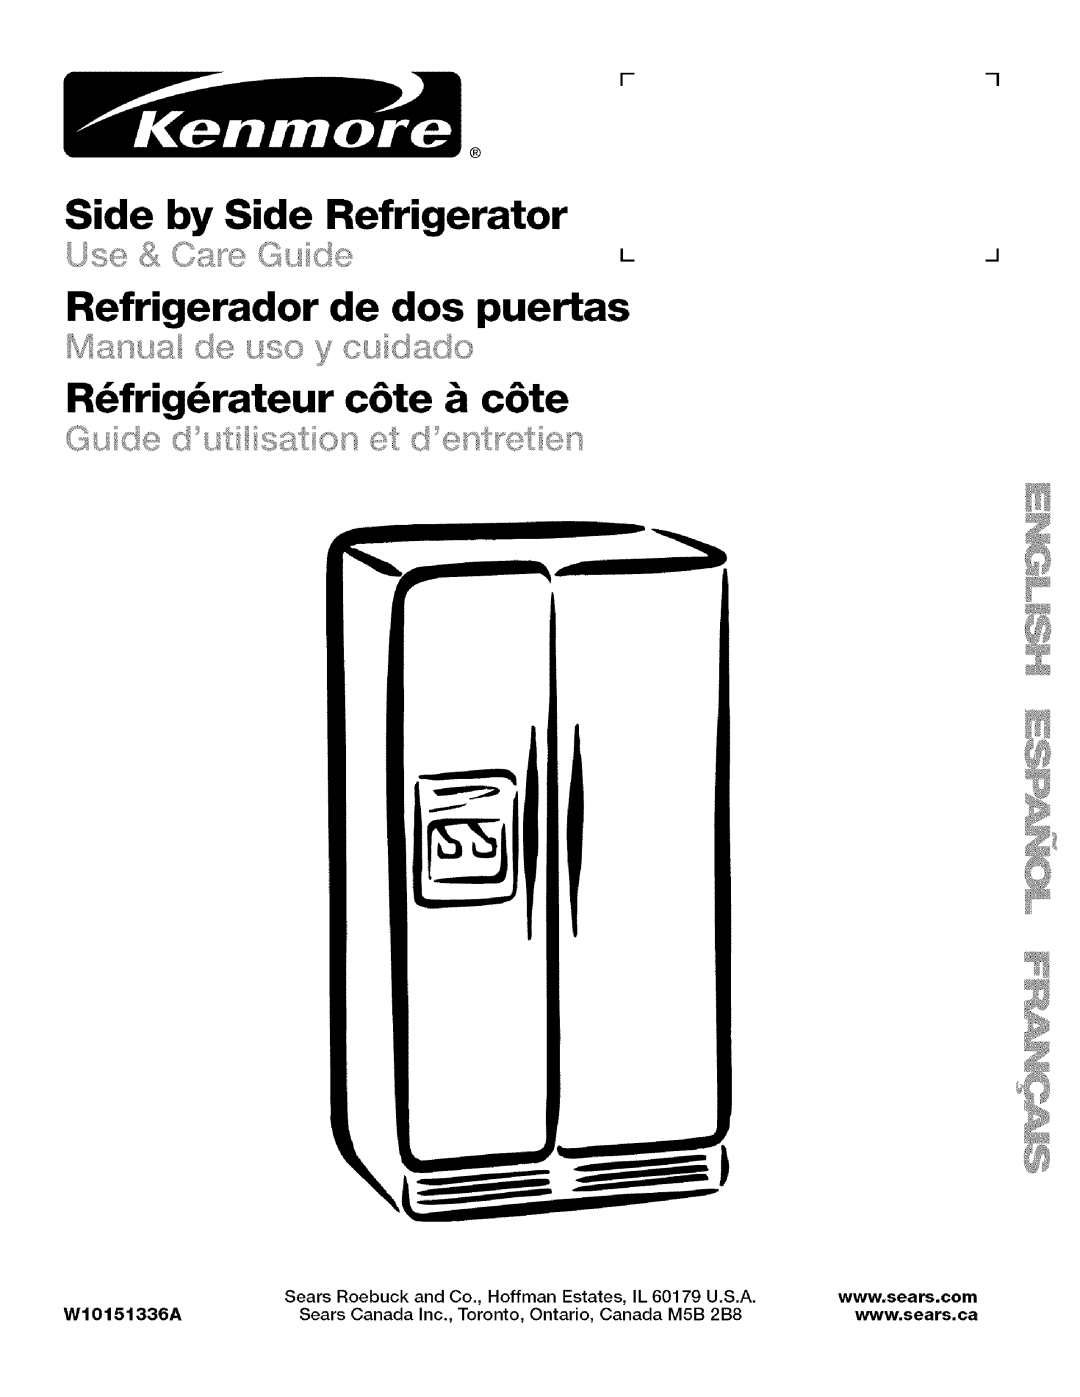 Kenmore WI0151336A manual Side by Side Refrigerator, Refrigerador de dos puertas, R_frig_rateur c6te & c6te 